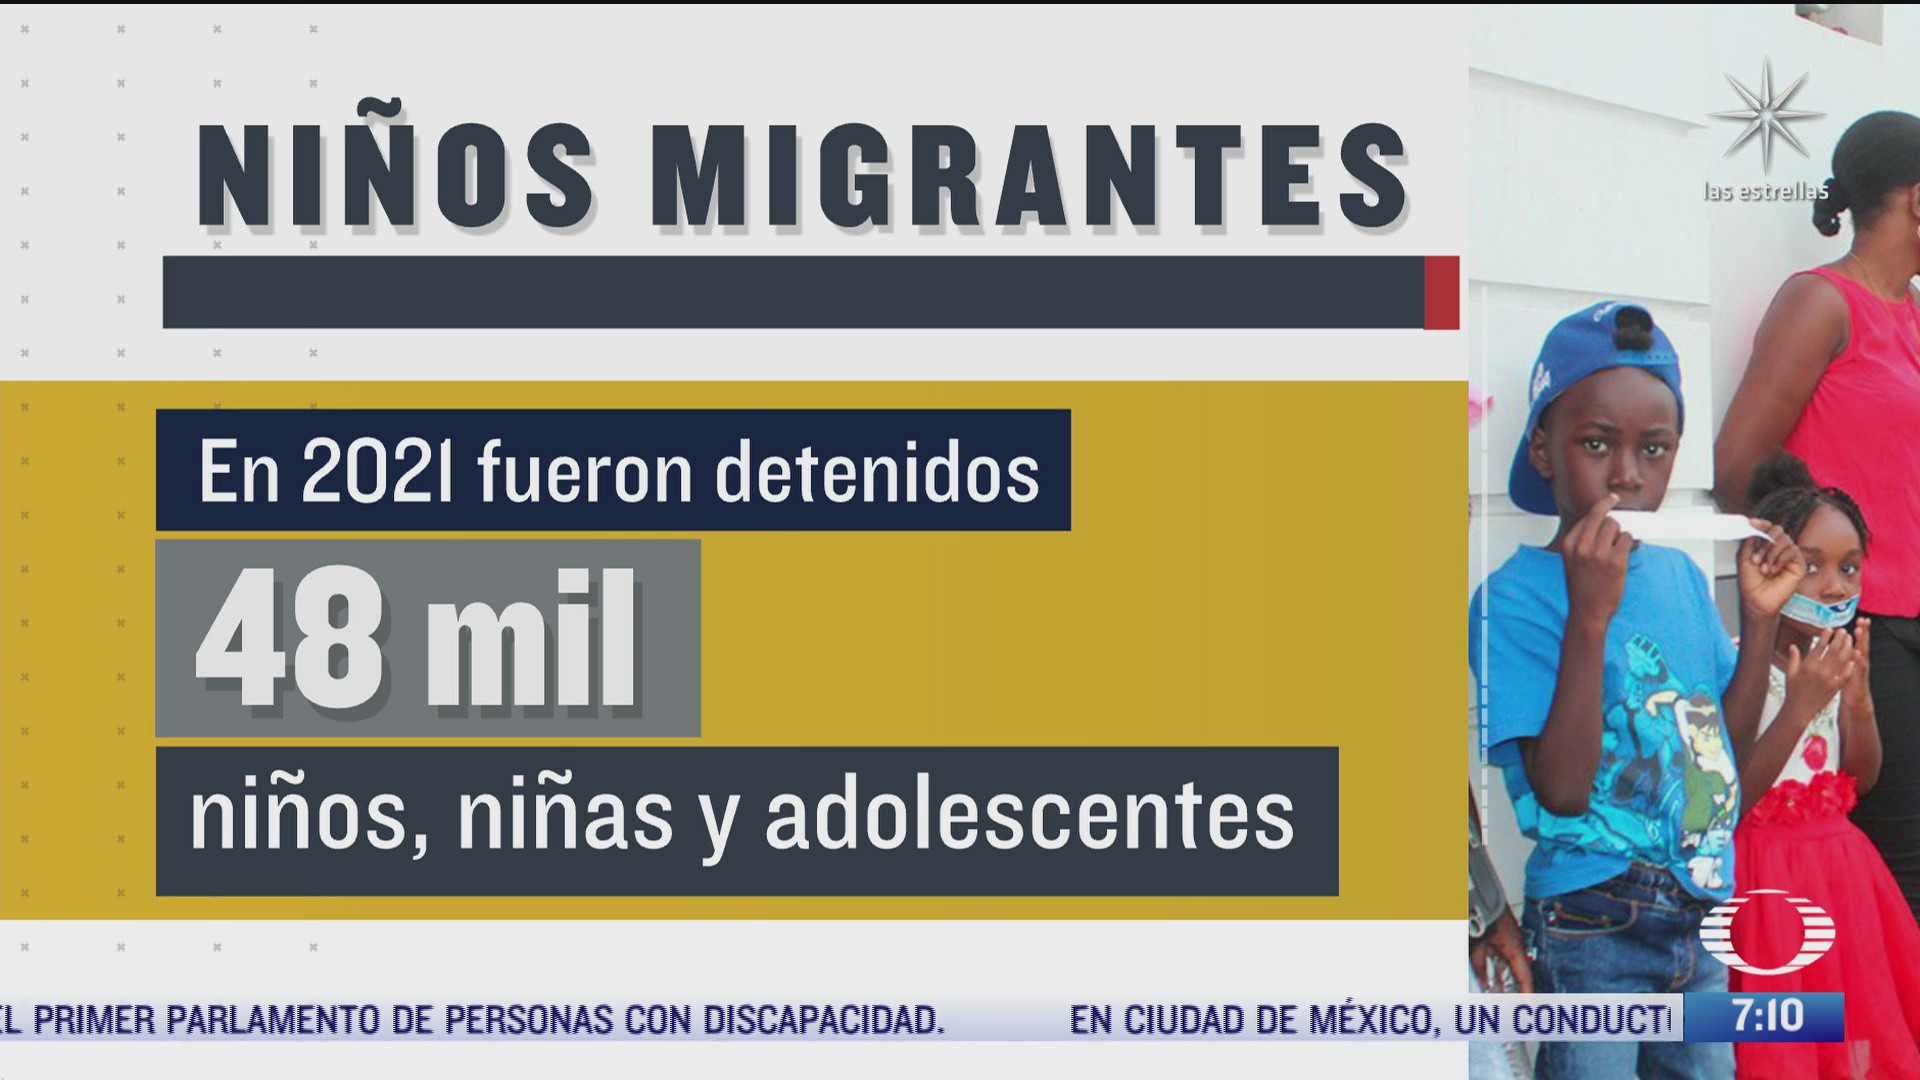 instituto nacional de migracion detuvo a 48 mil ninos y adolescentes durante